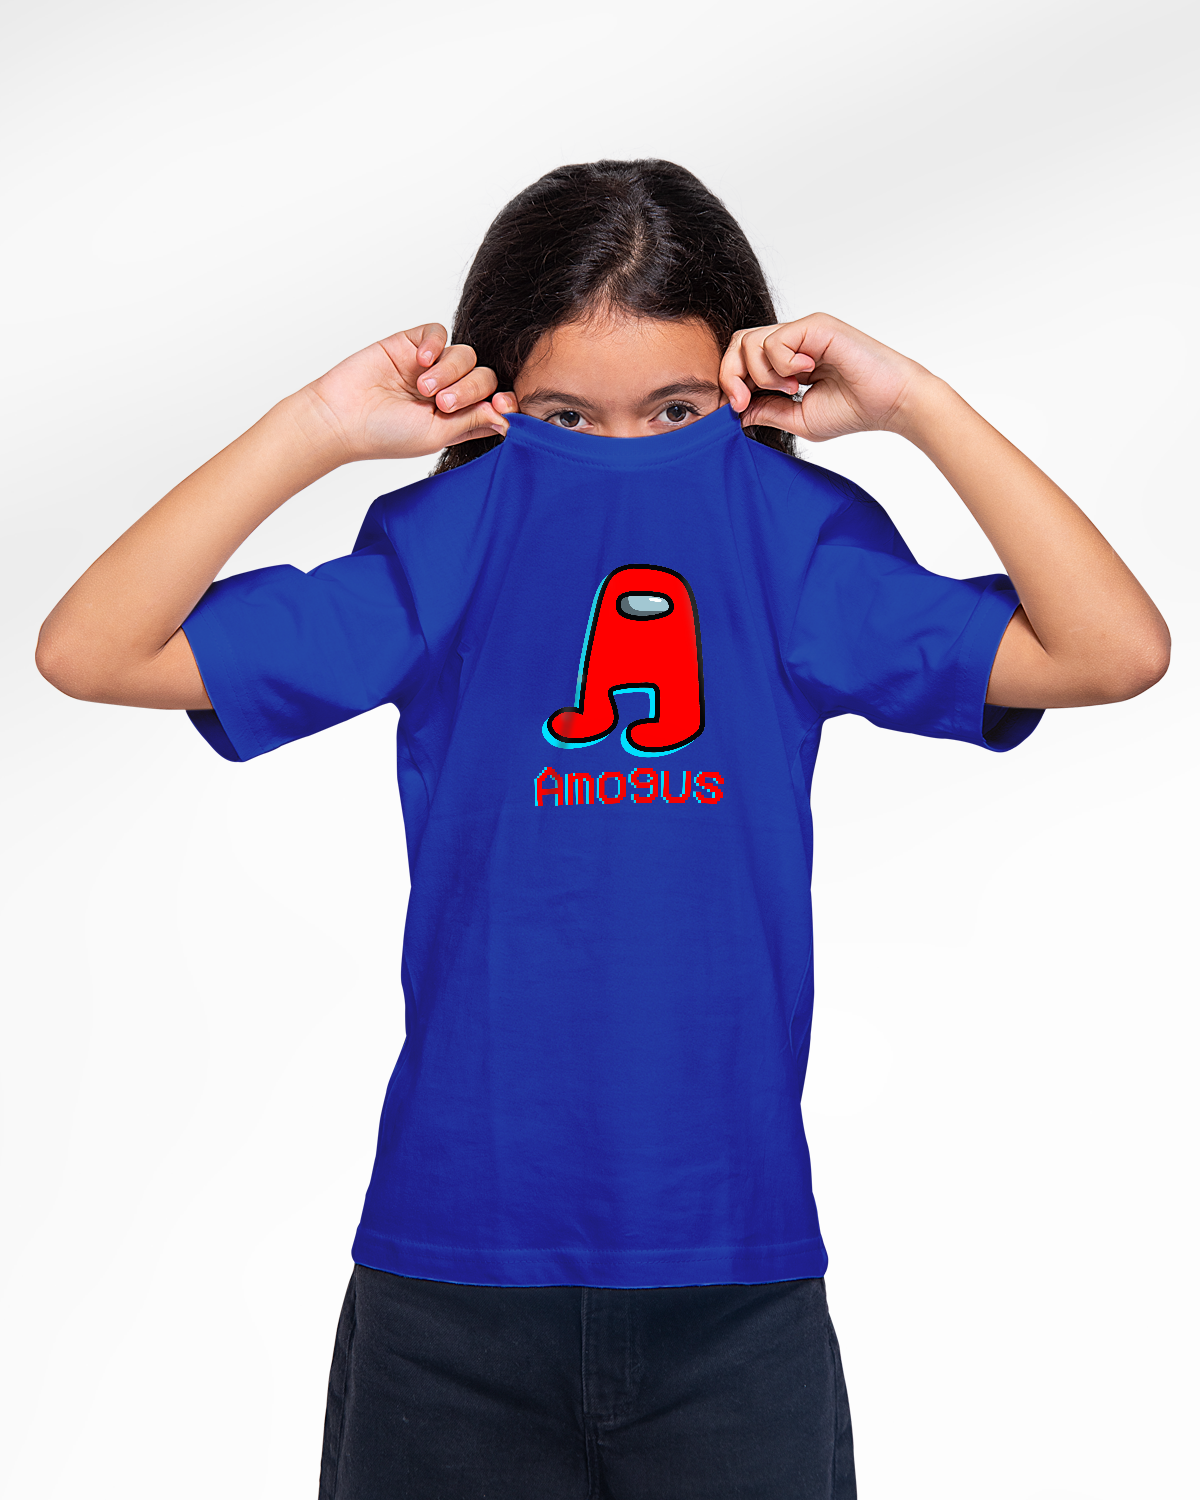 Girls' T-shirt (Amogous)